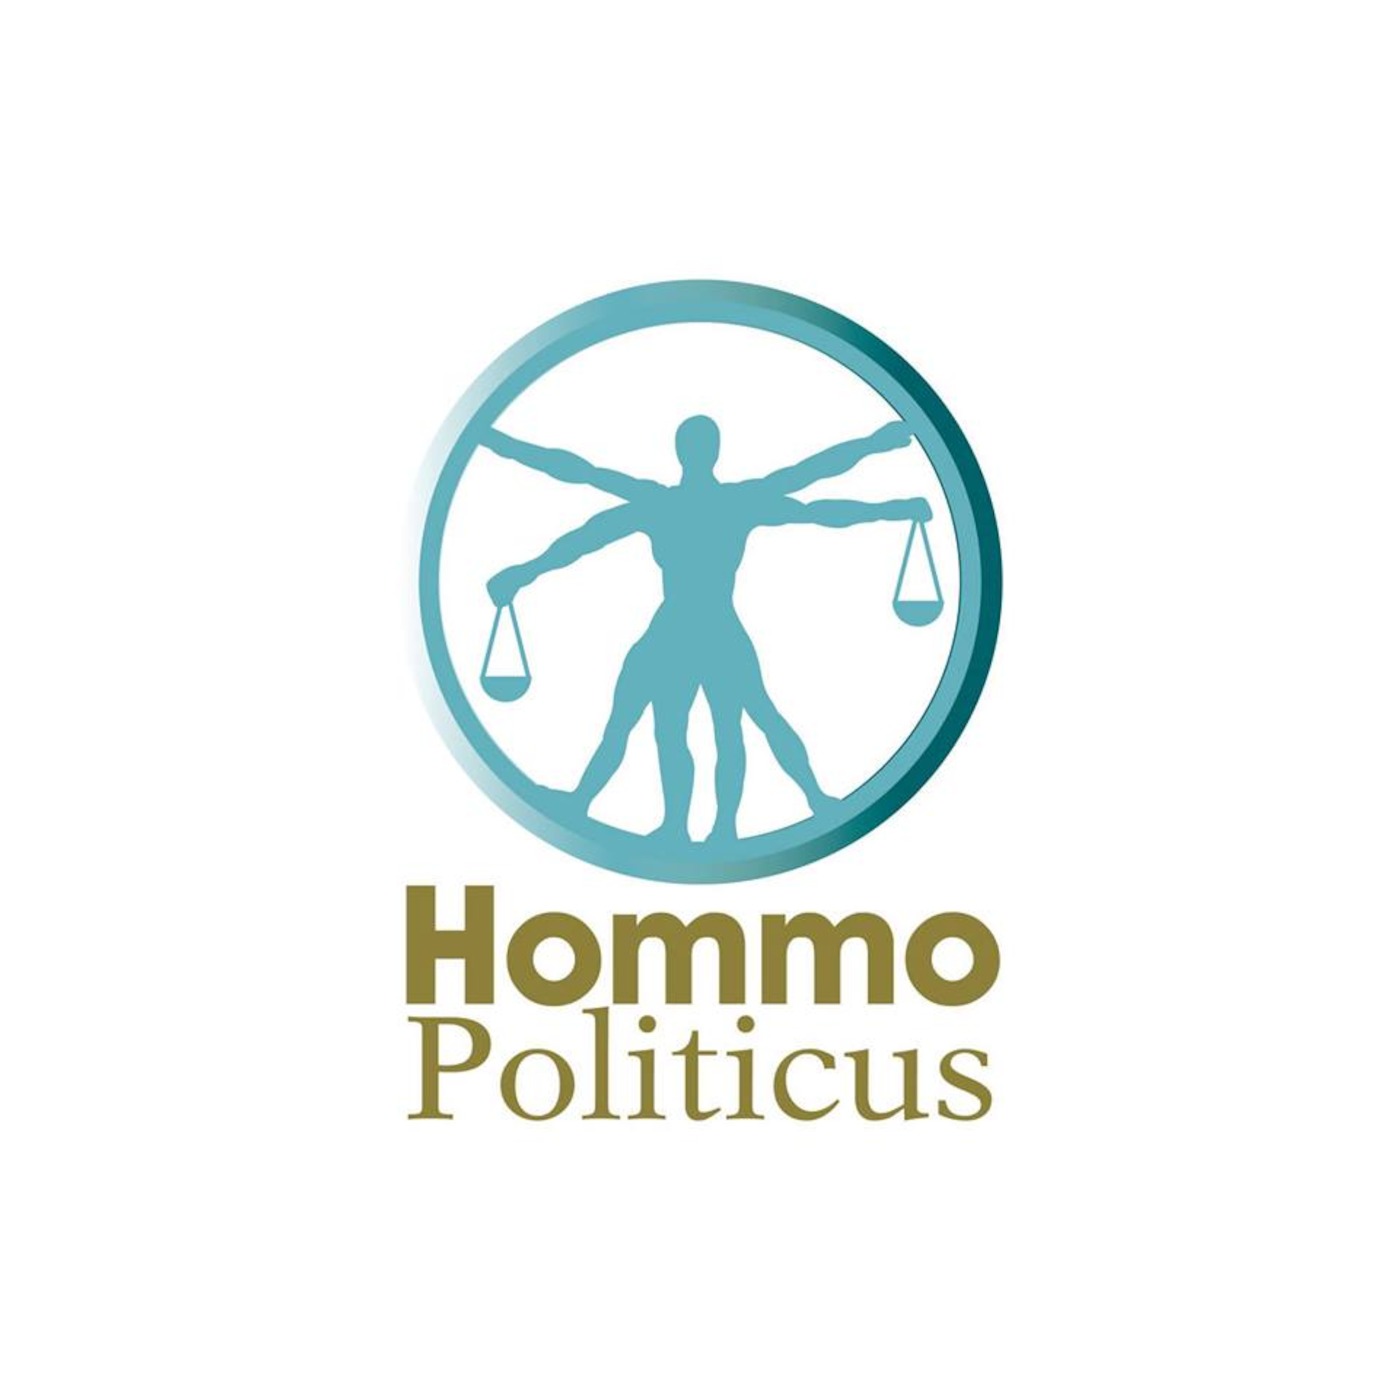 Hommo Politicus